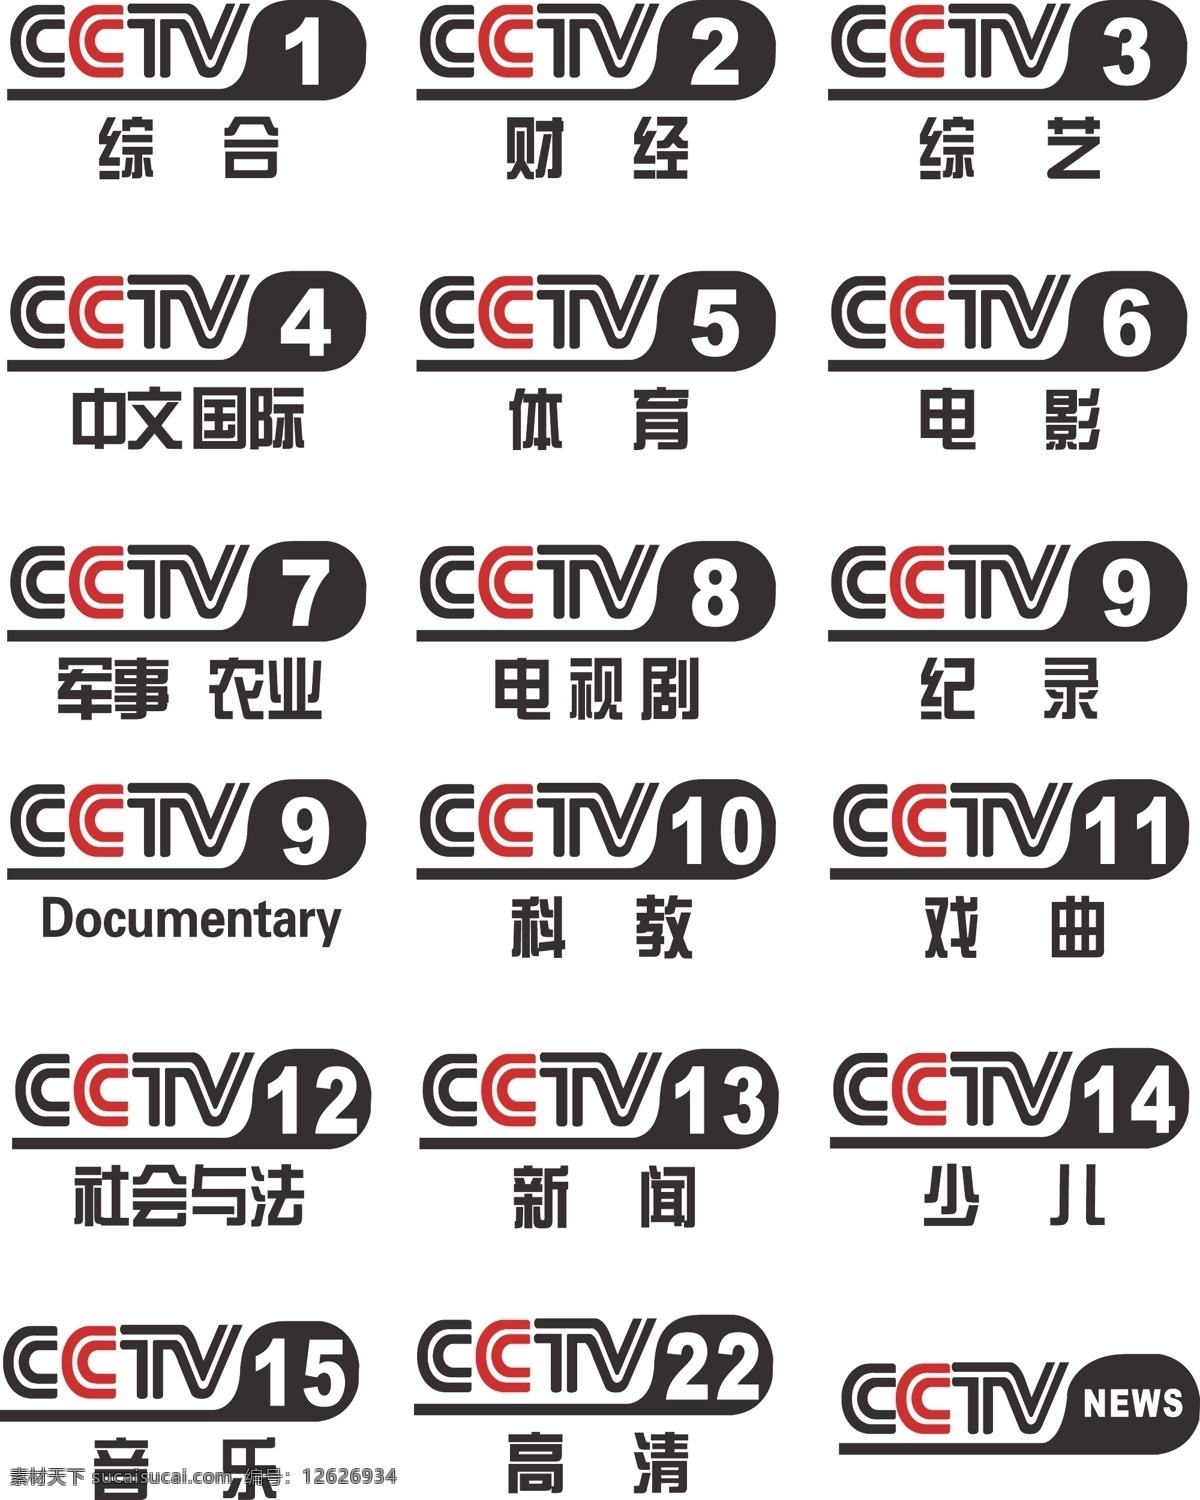 央视logo logo 央视 cctv 频道 标志图标 公共标识标志